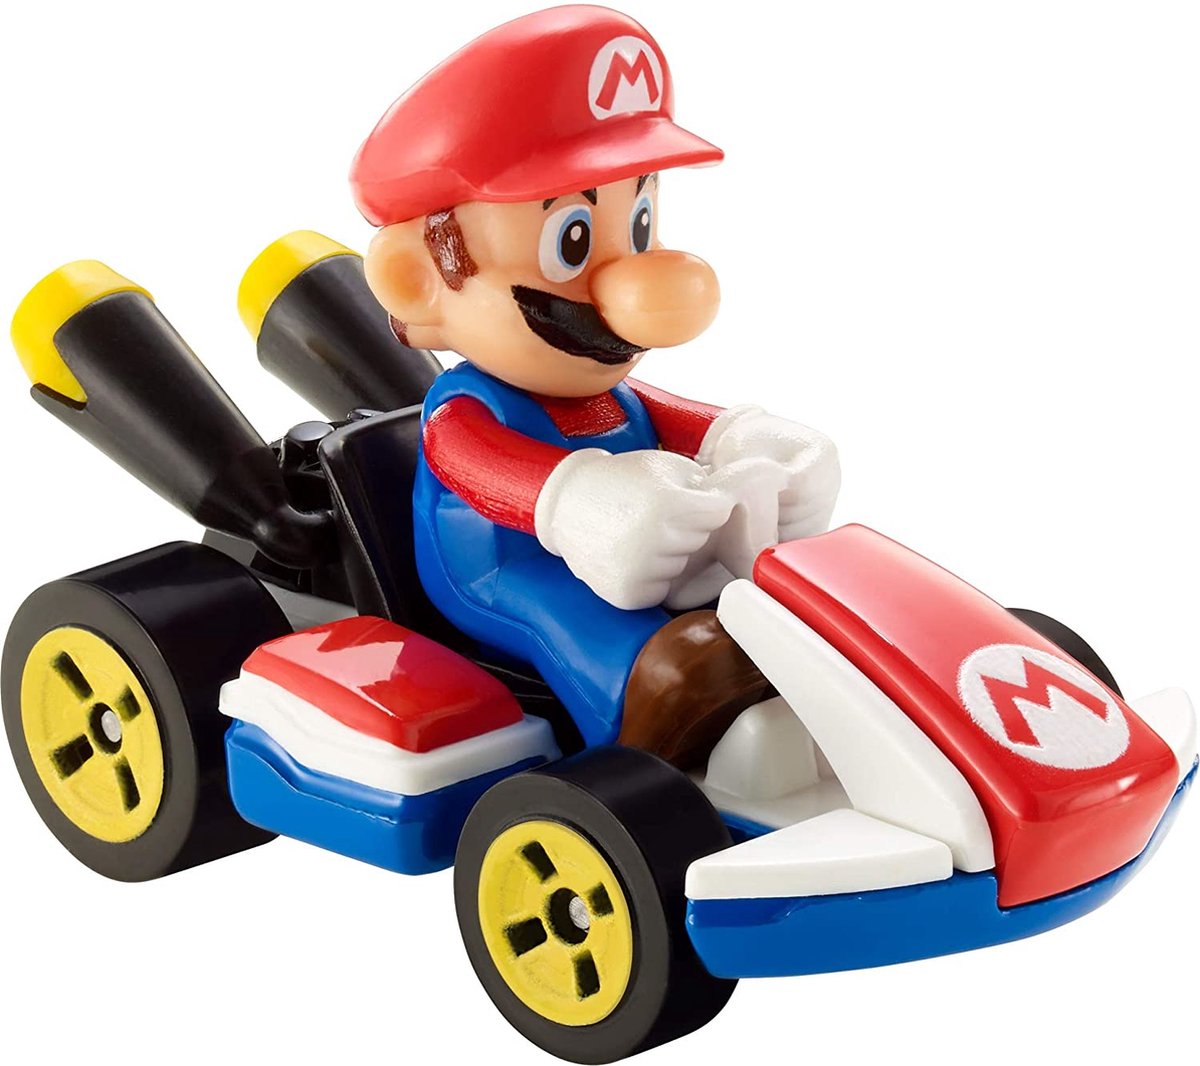 Hot Wheels raceauto Mario Kart Standard 8 cm 1:64/rood - Blauw